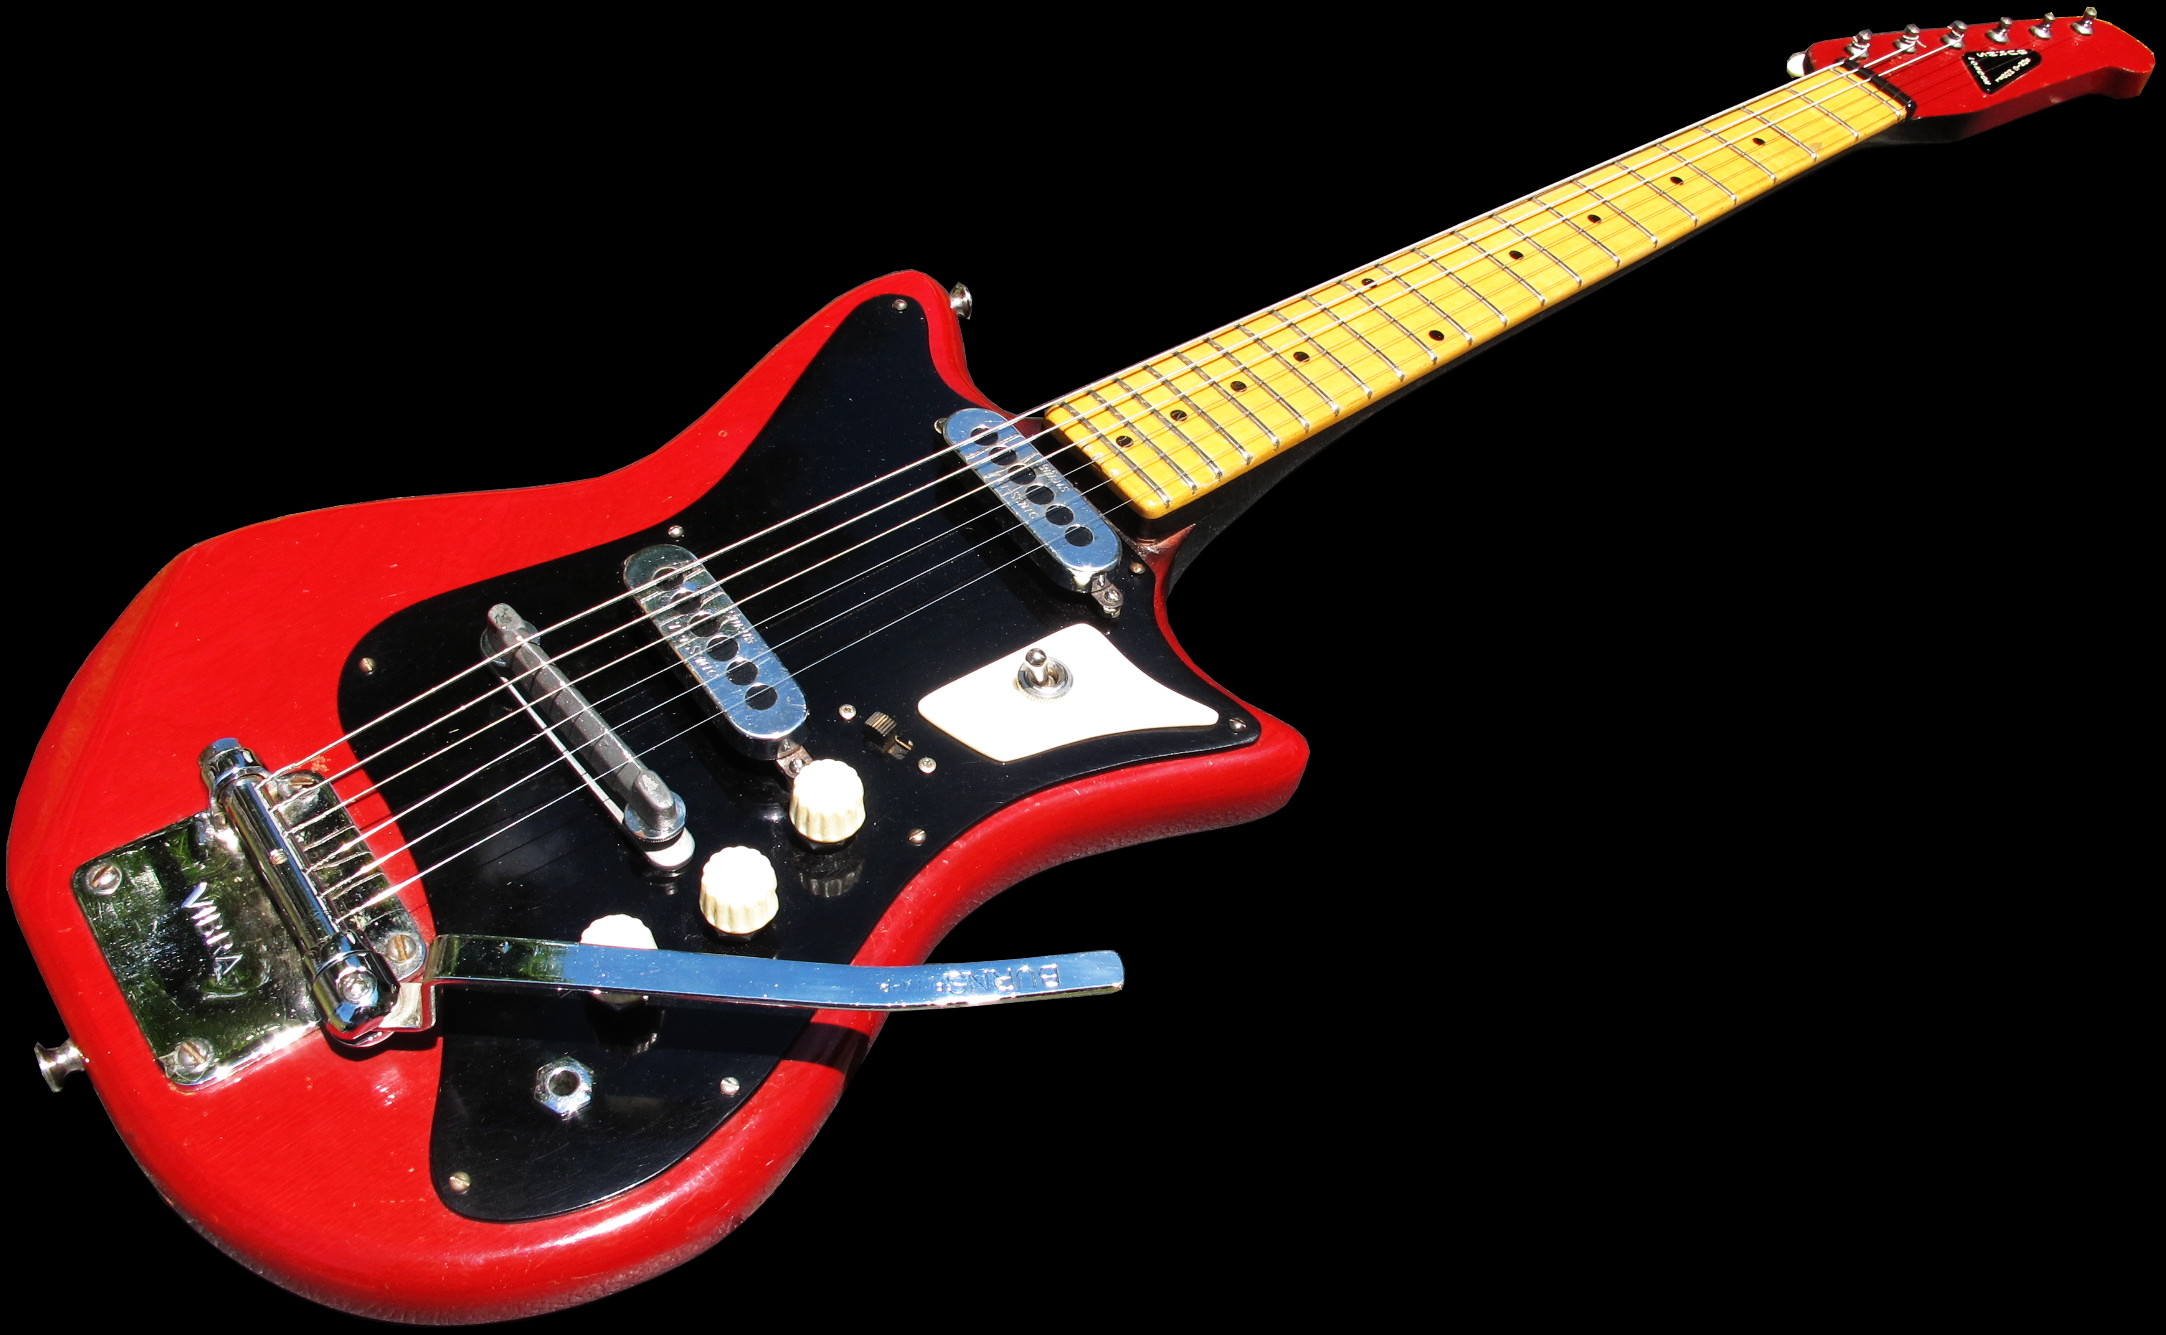 1961 Burns Sonic Model Guitar